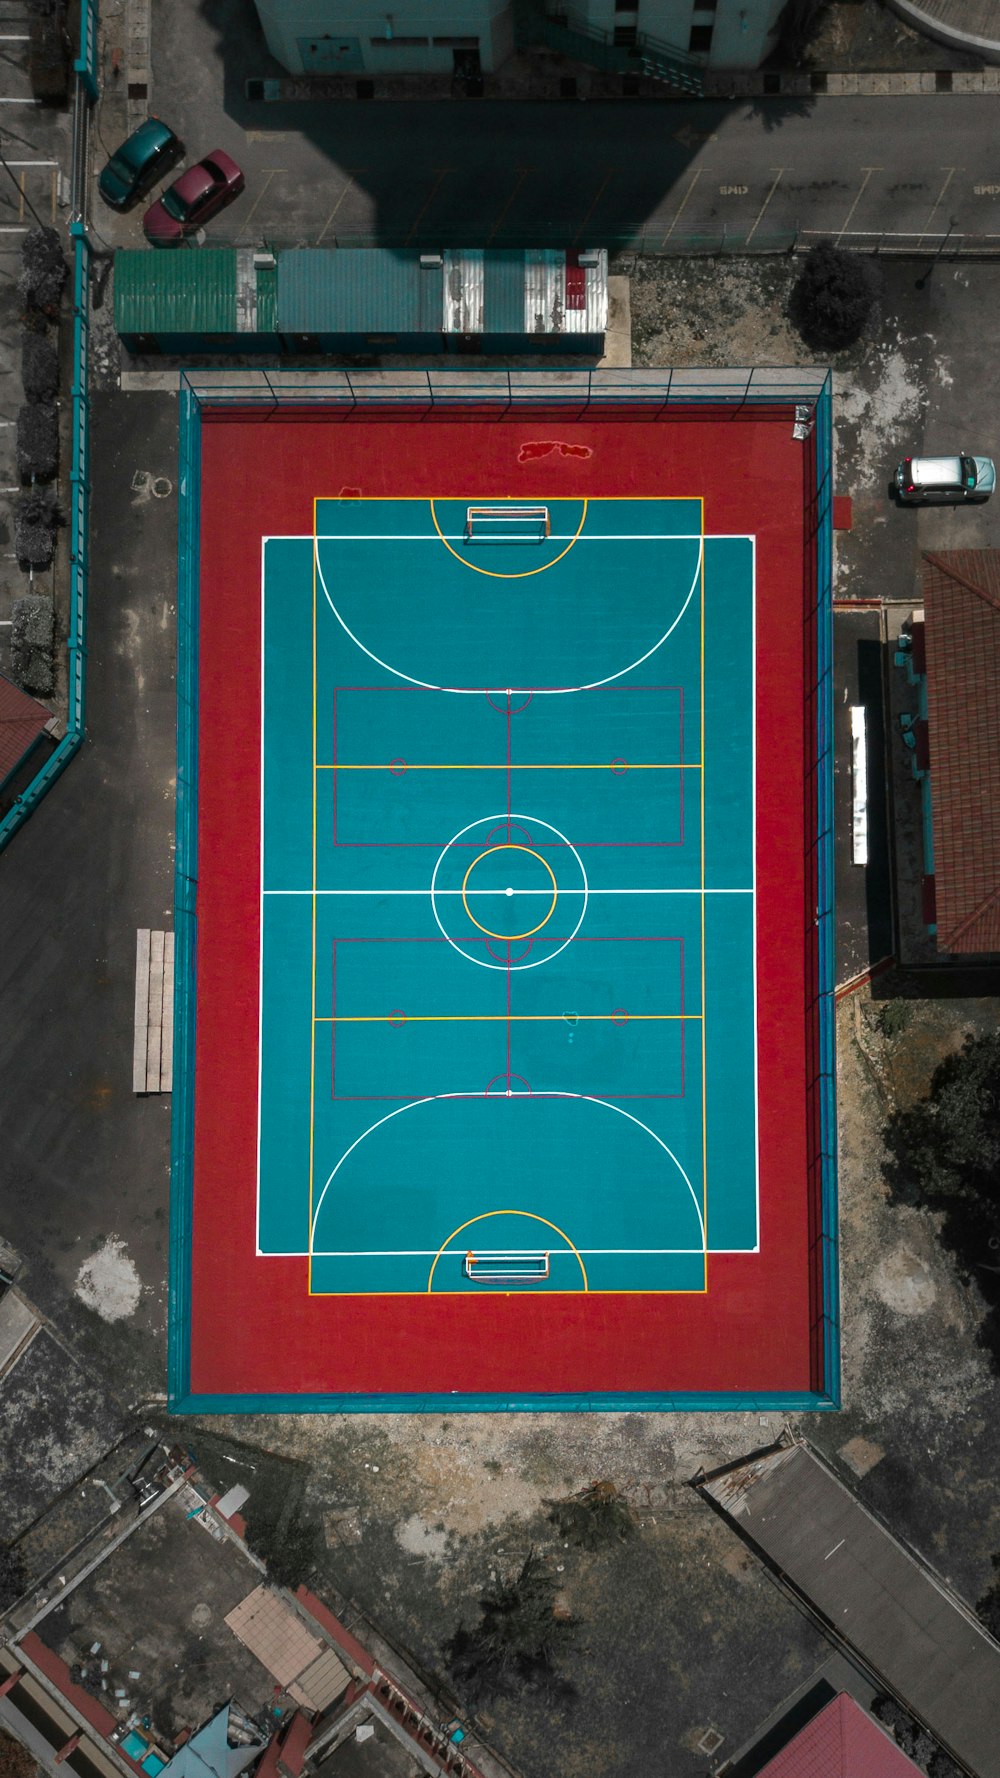 Luftaufnahme des Fußballplatzes